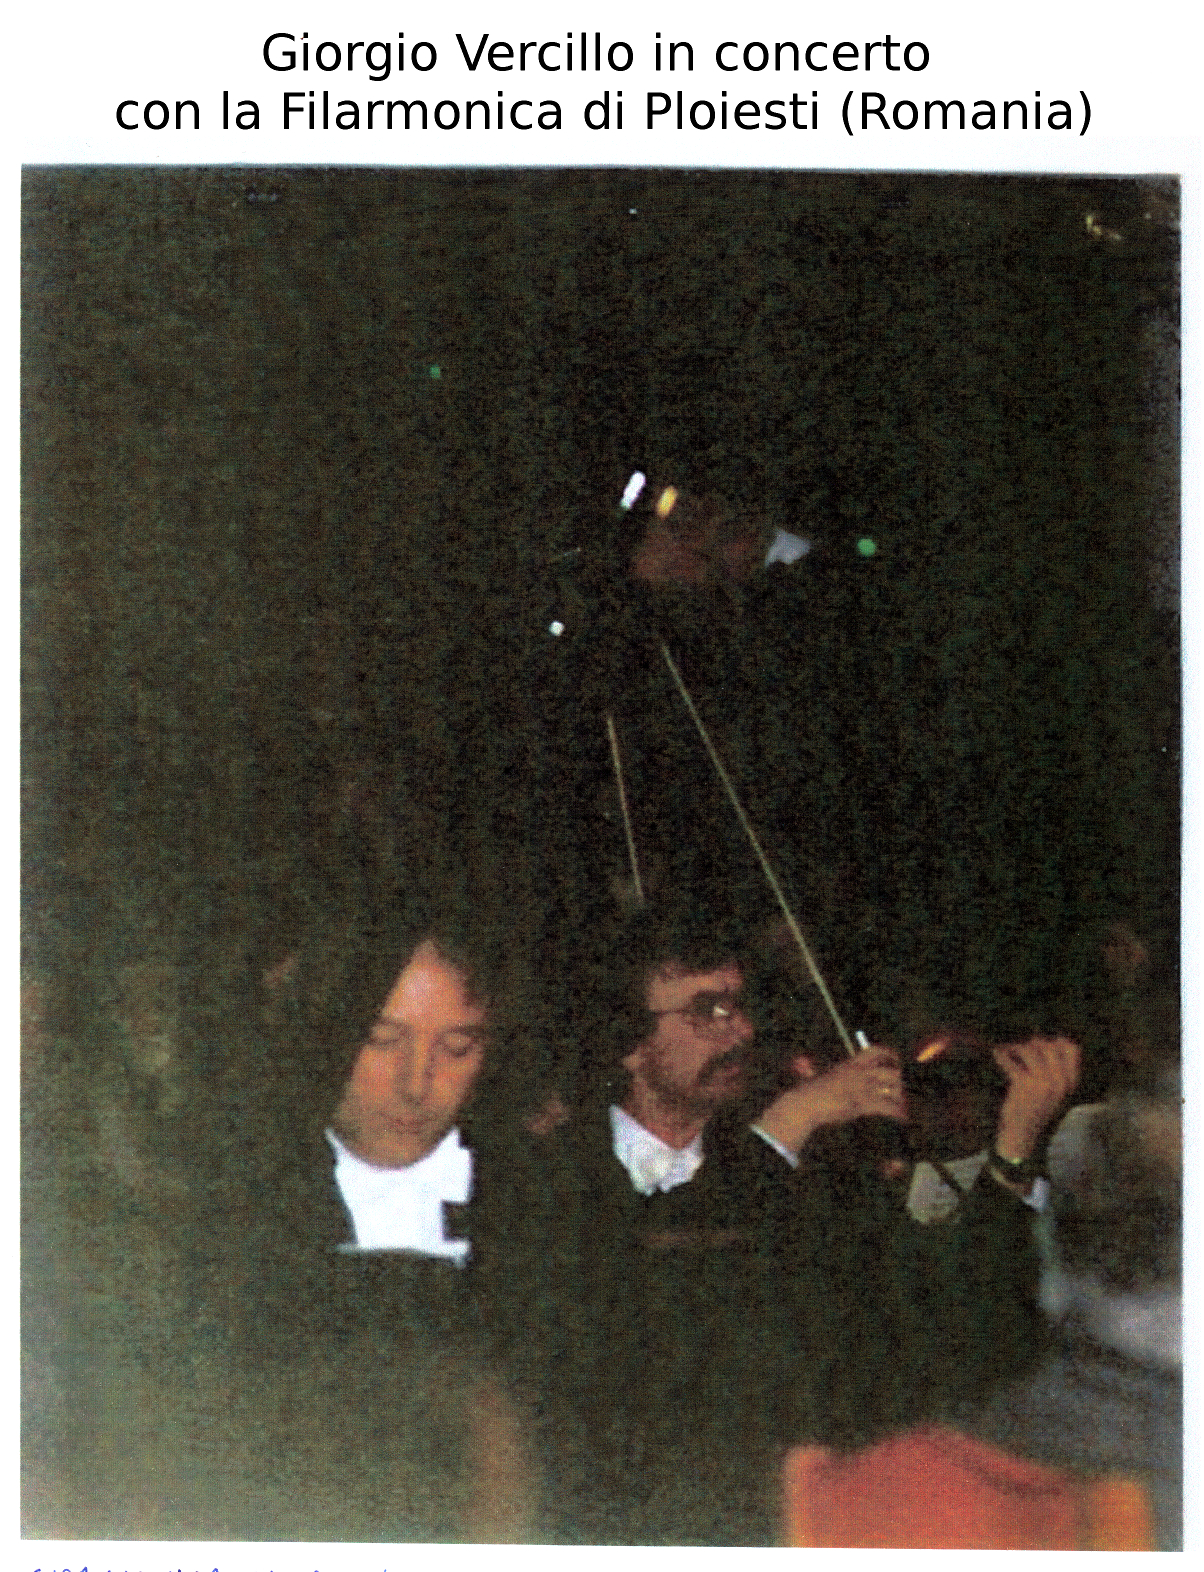 Giorgio Vercillo con la Filarmonica di Ploiesti (Romania)